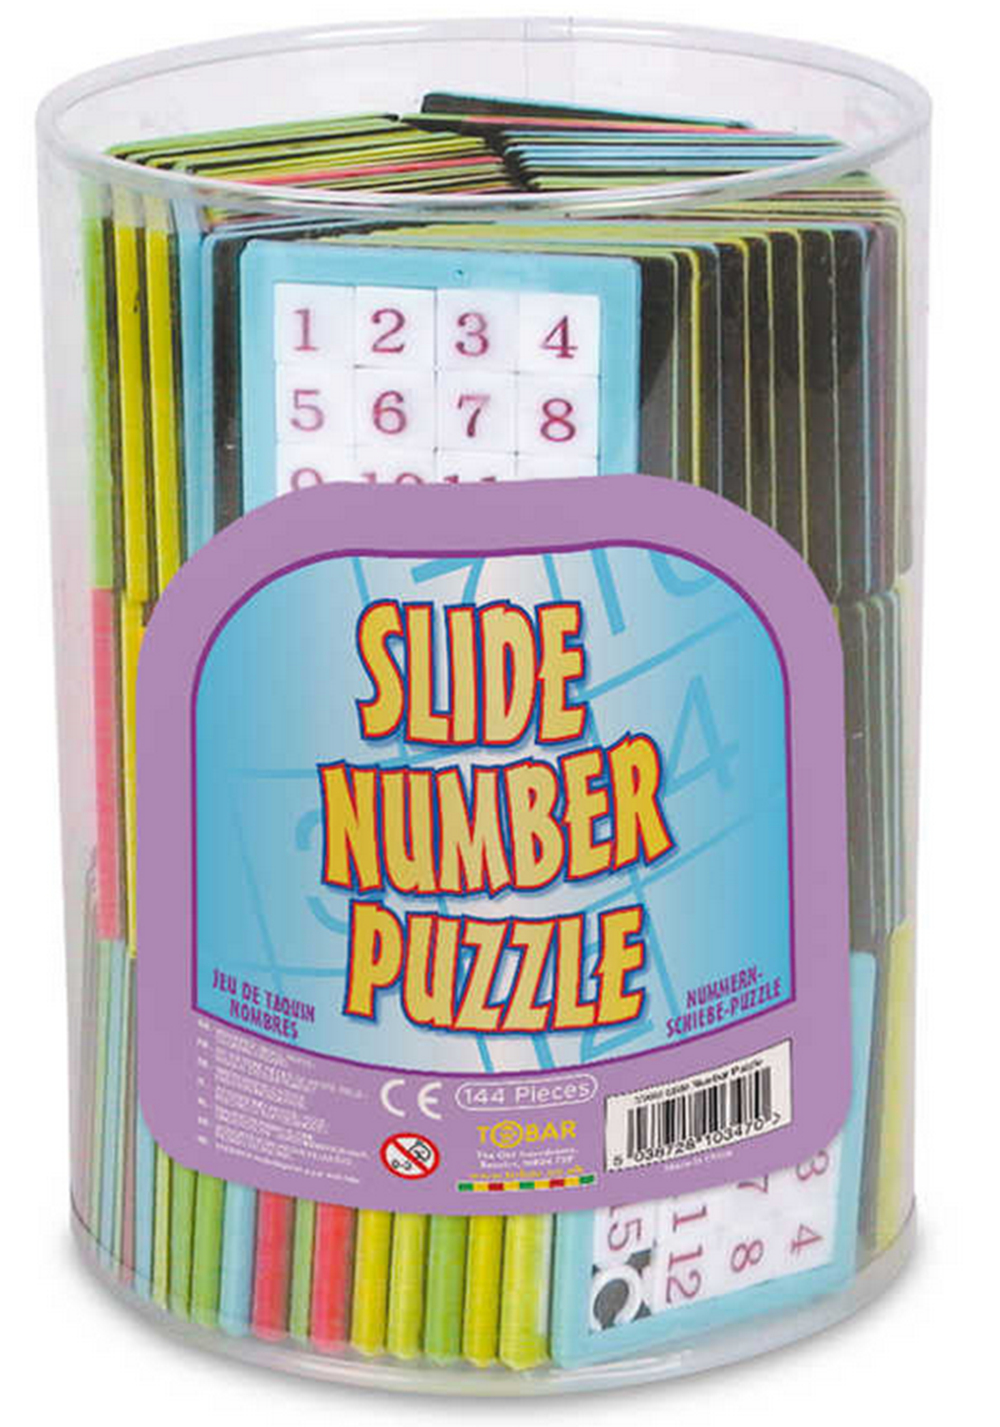 Tobar Slide Puzzle